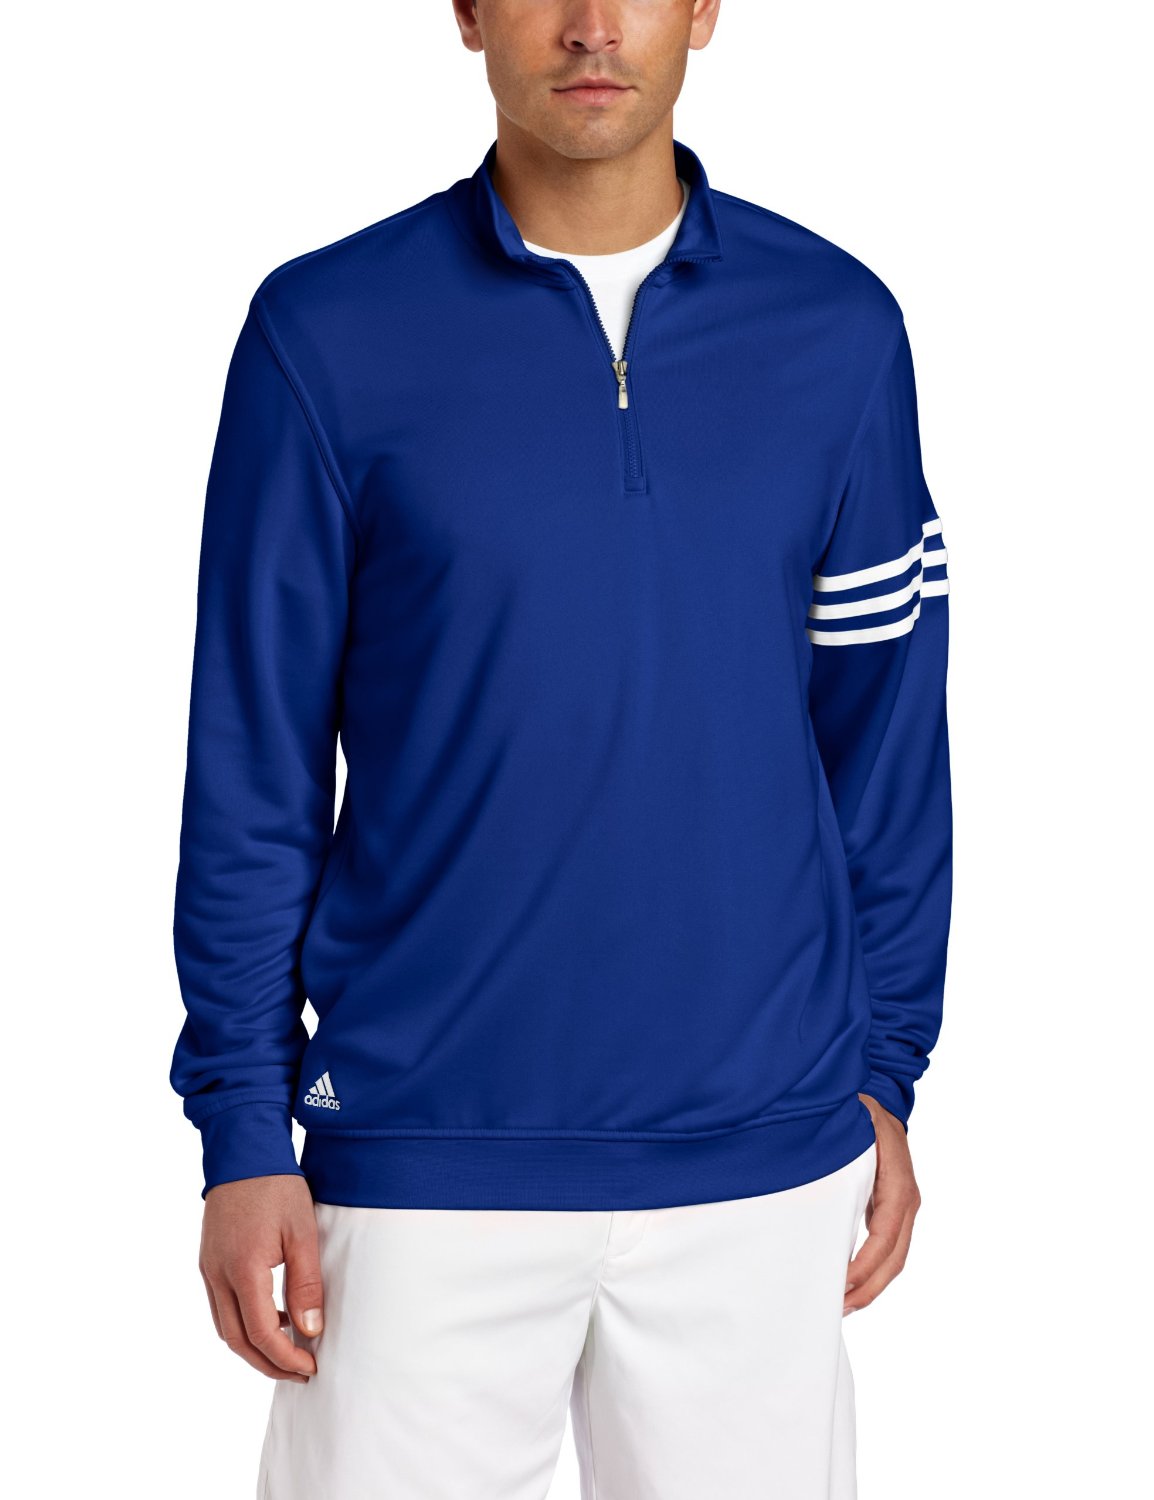 Adidas Mens 3-Stripes Golf Layering Top